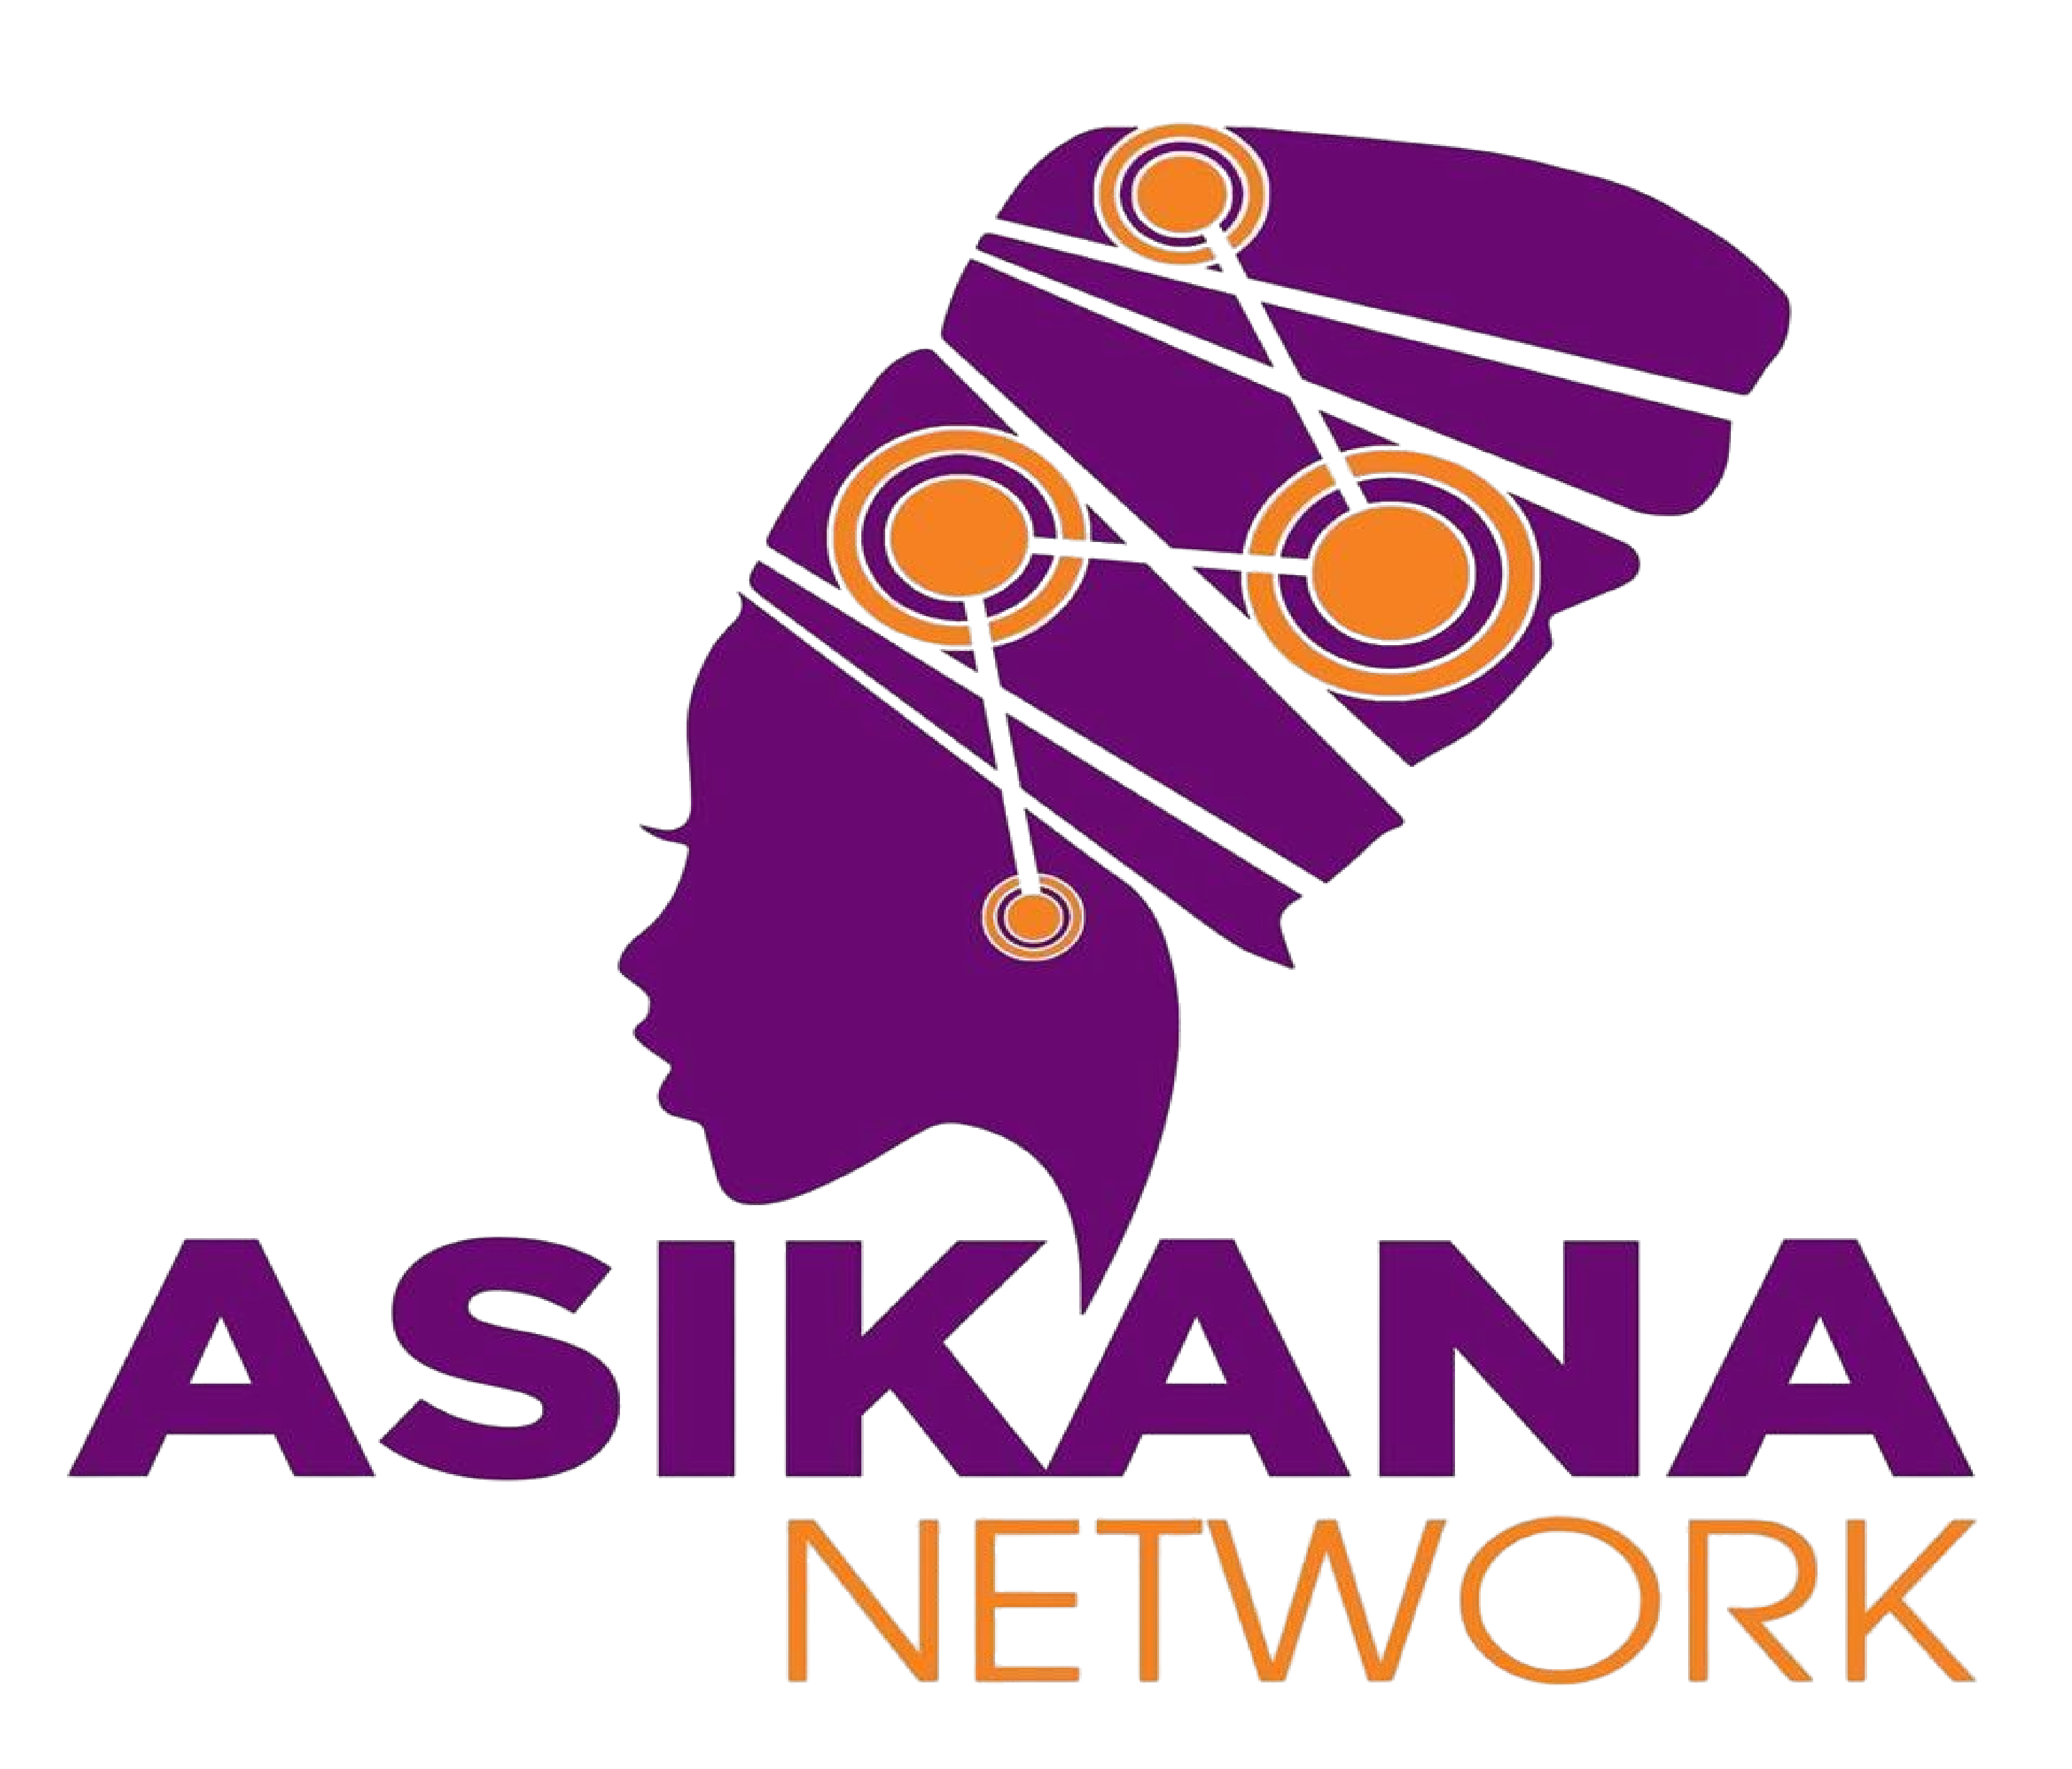 Asikana Network